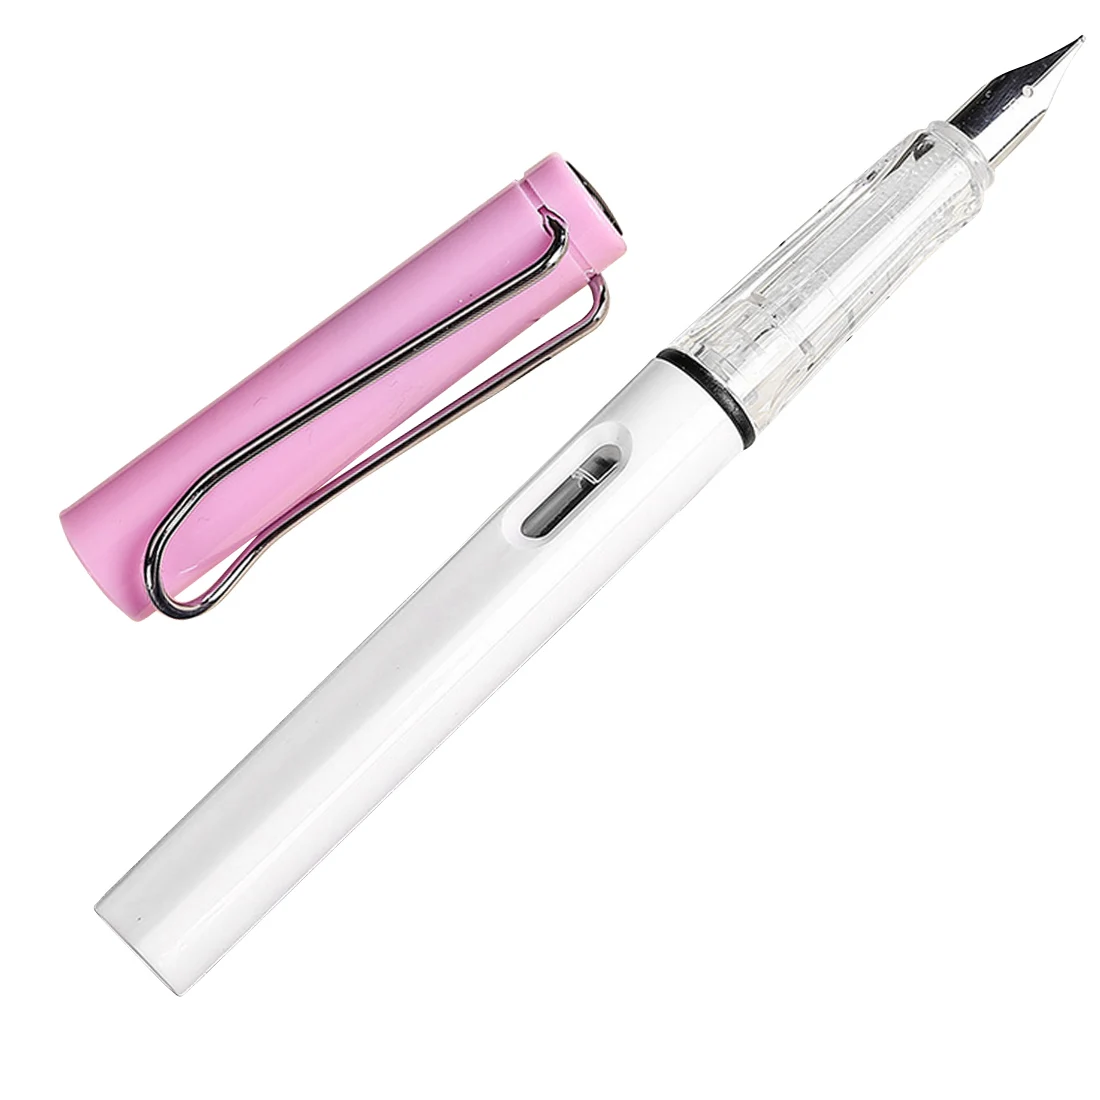 Цветная Новая мода 0,5 мм 0,38 мм авторучка Высокое качество Сменные чернила ручка бизнес студенческие канцелярские принадлежности - Цвет: white and purple